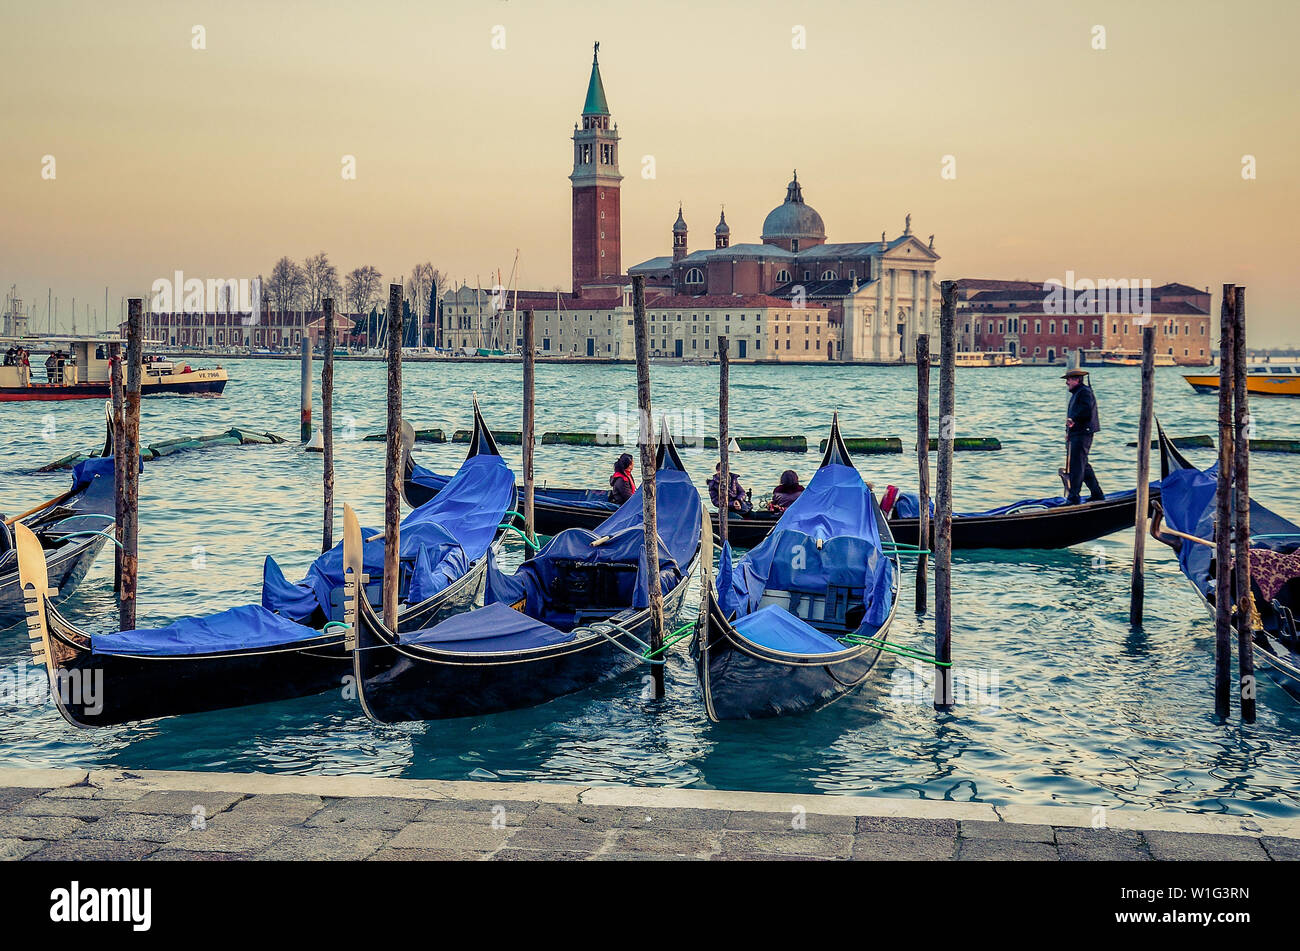 Après la longue période qu'ils amènent les touristes d'un endroit à l'autre à Venise, même les bateaux ont besoin de quelques instants de repos pour recharger leurs batteries à l'al. Banque D'Images